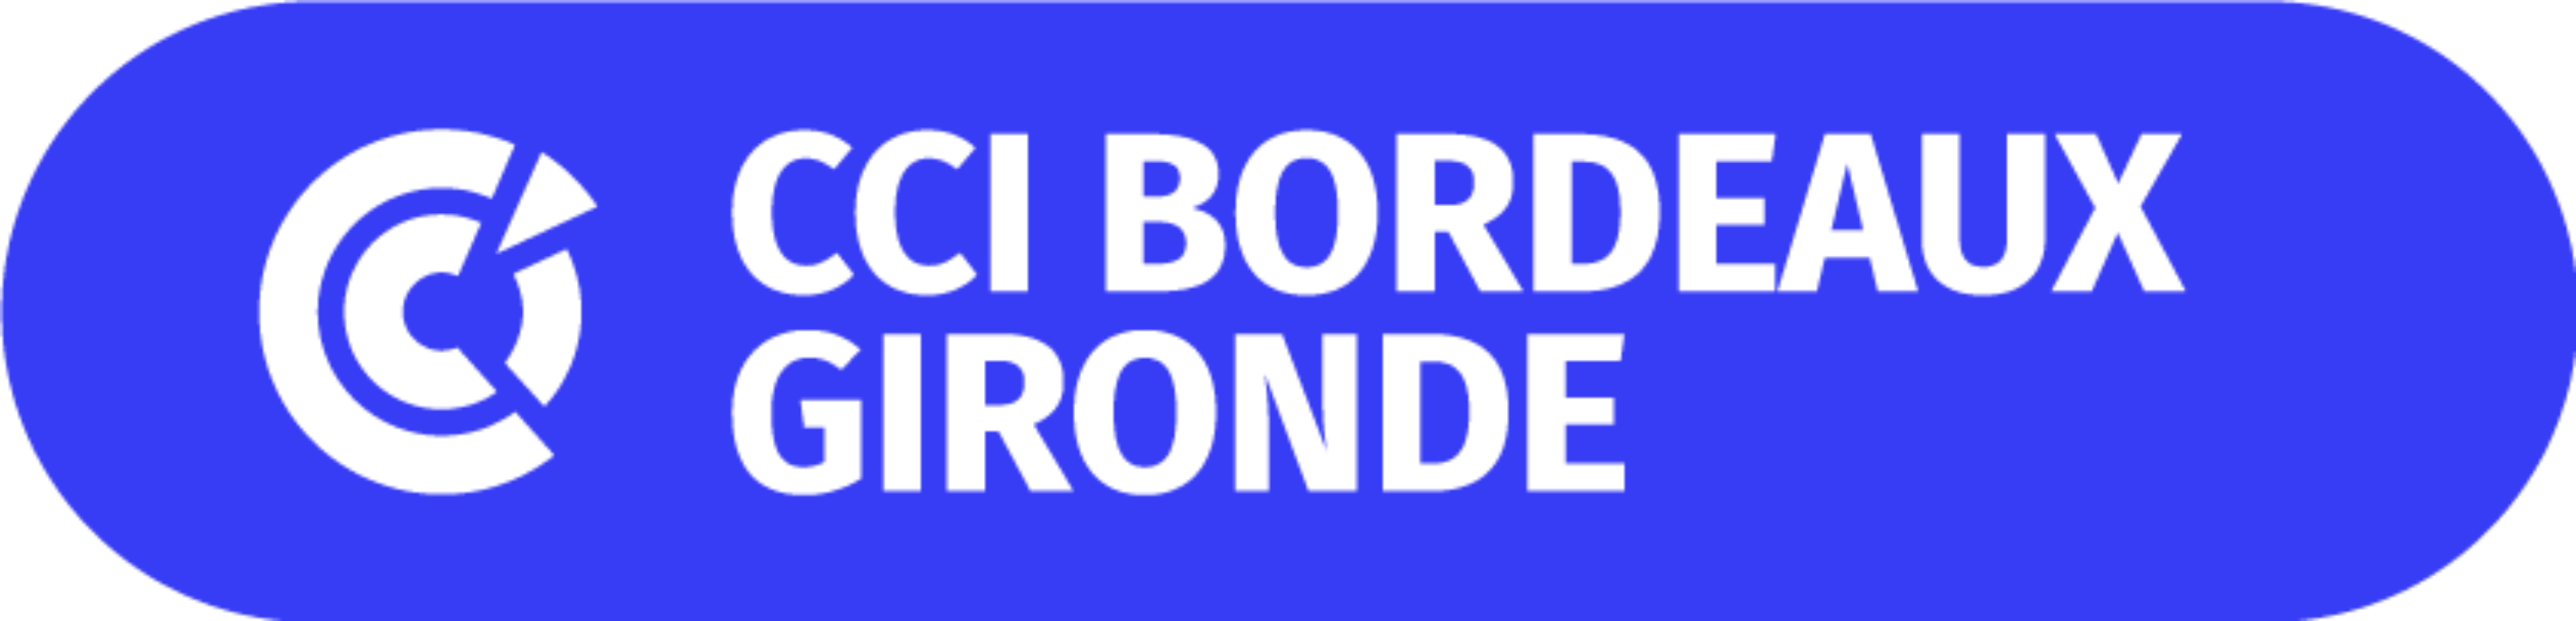 logo CCI Bordeaux